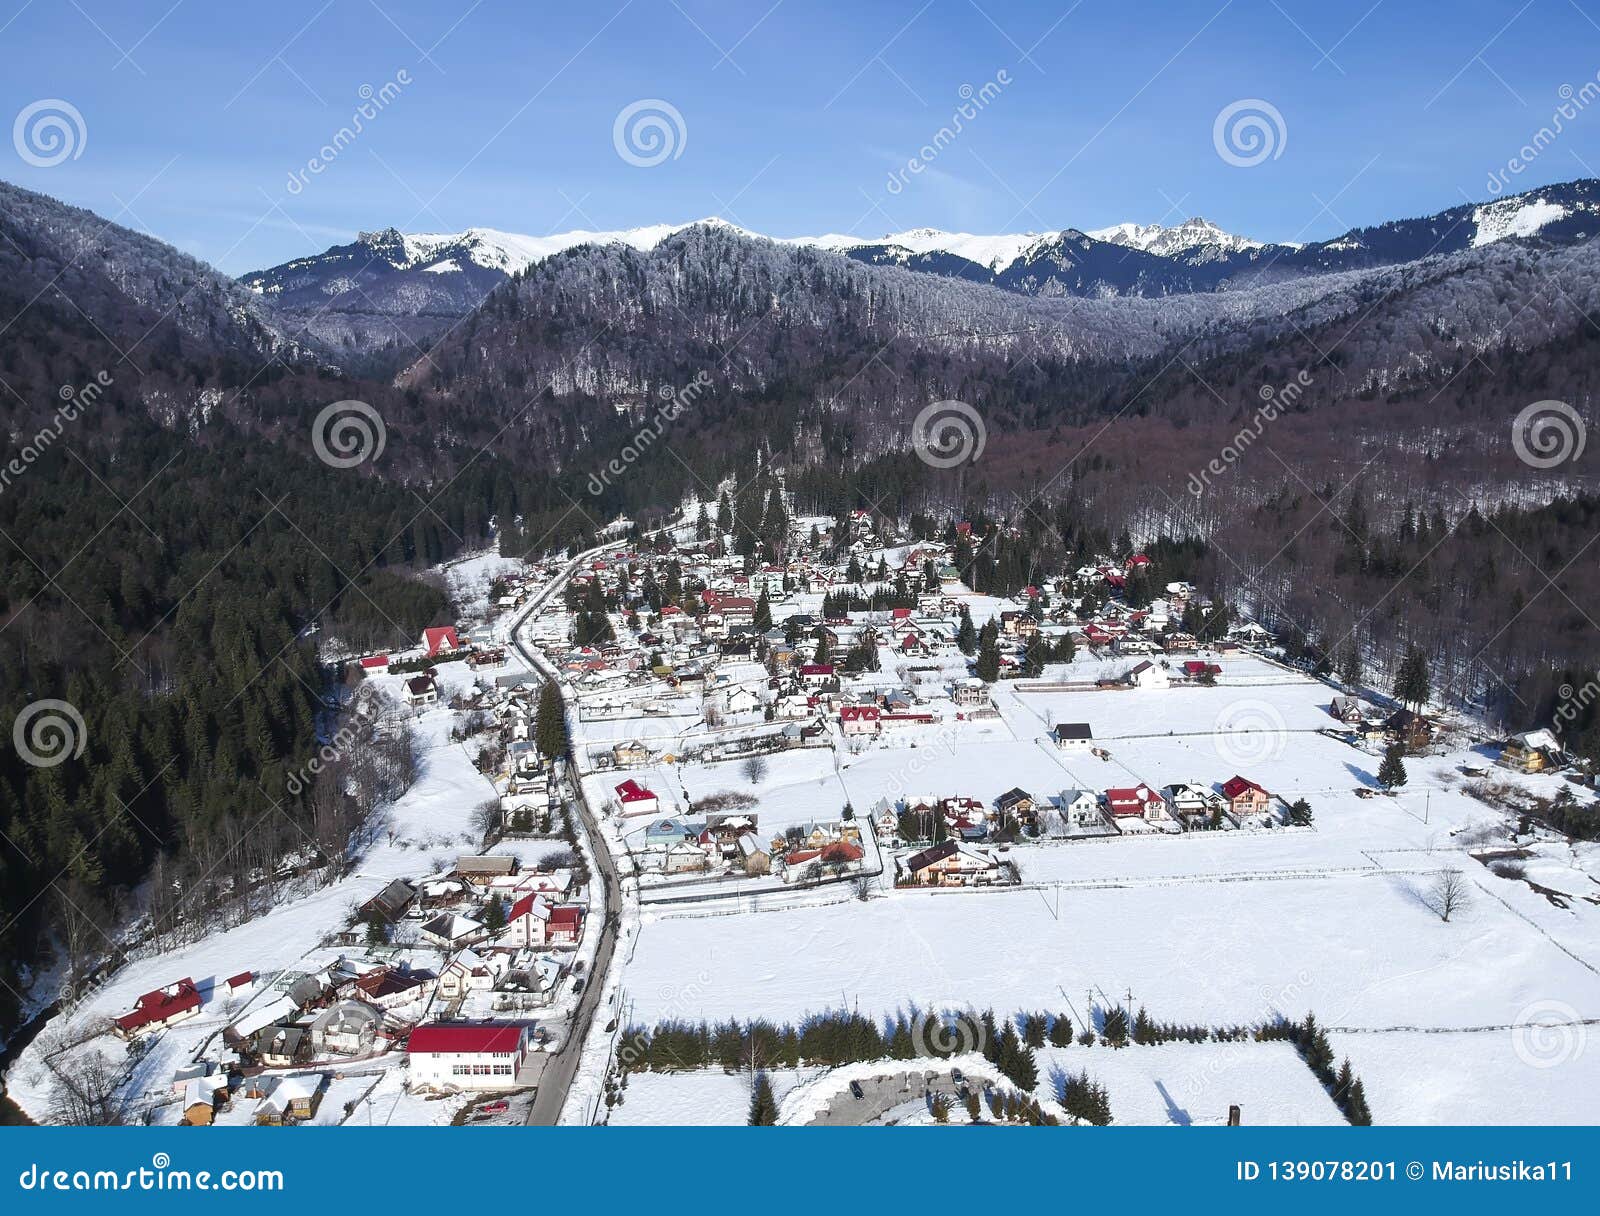 cheia , prahova county, romania, aerial view